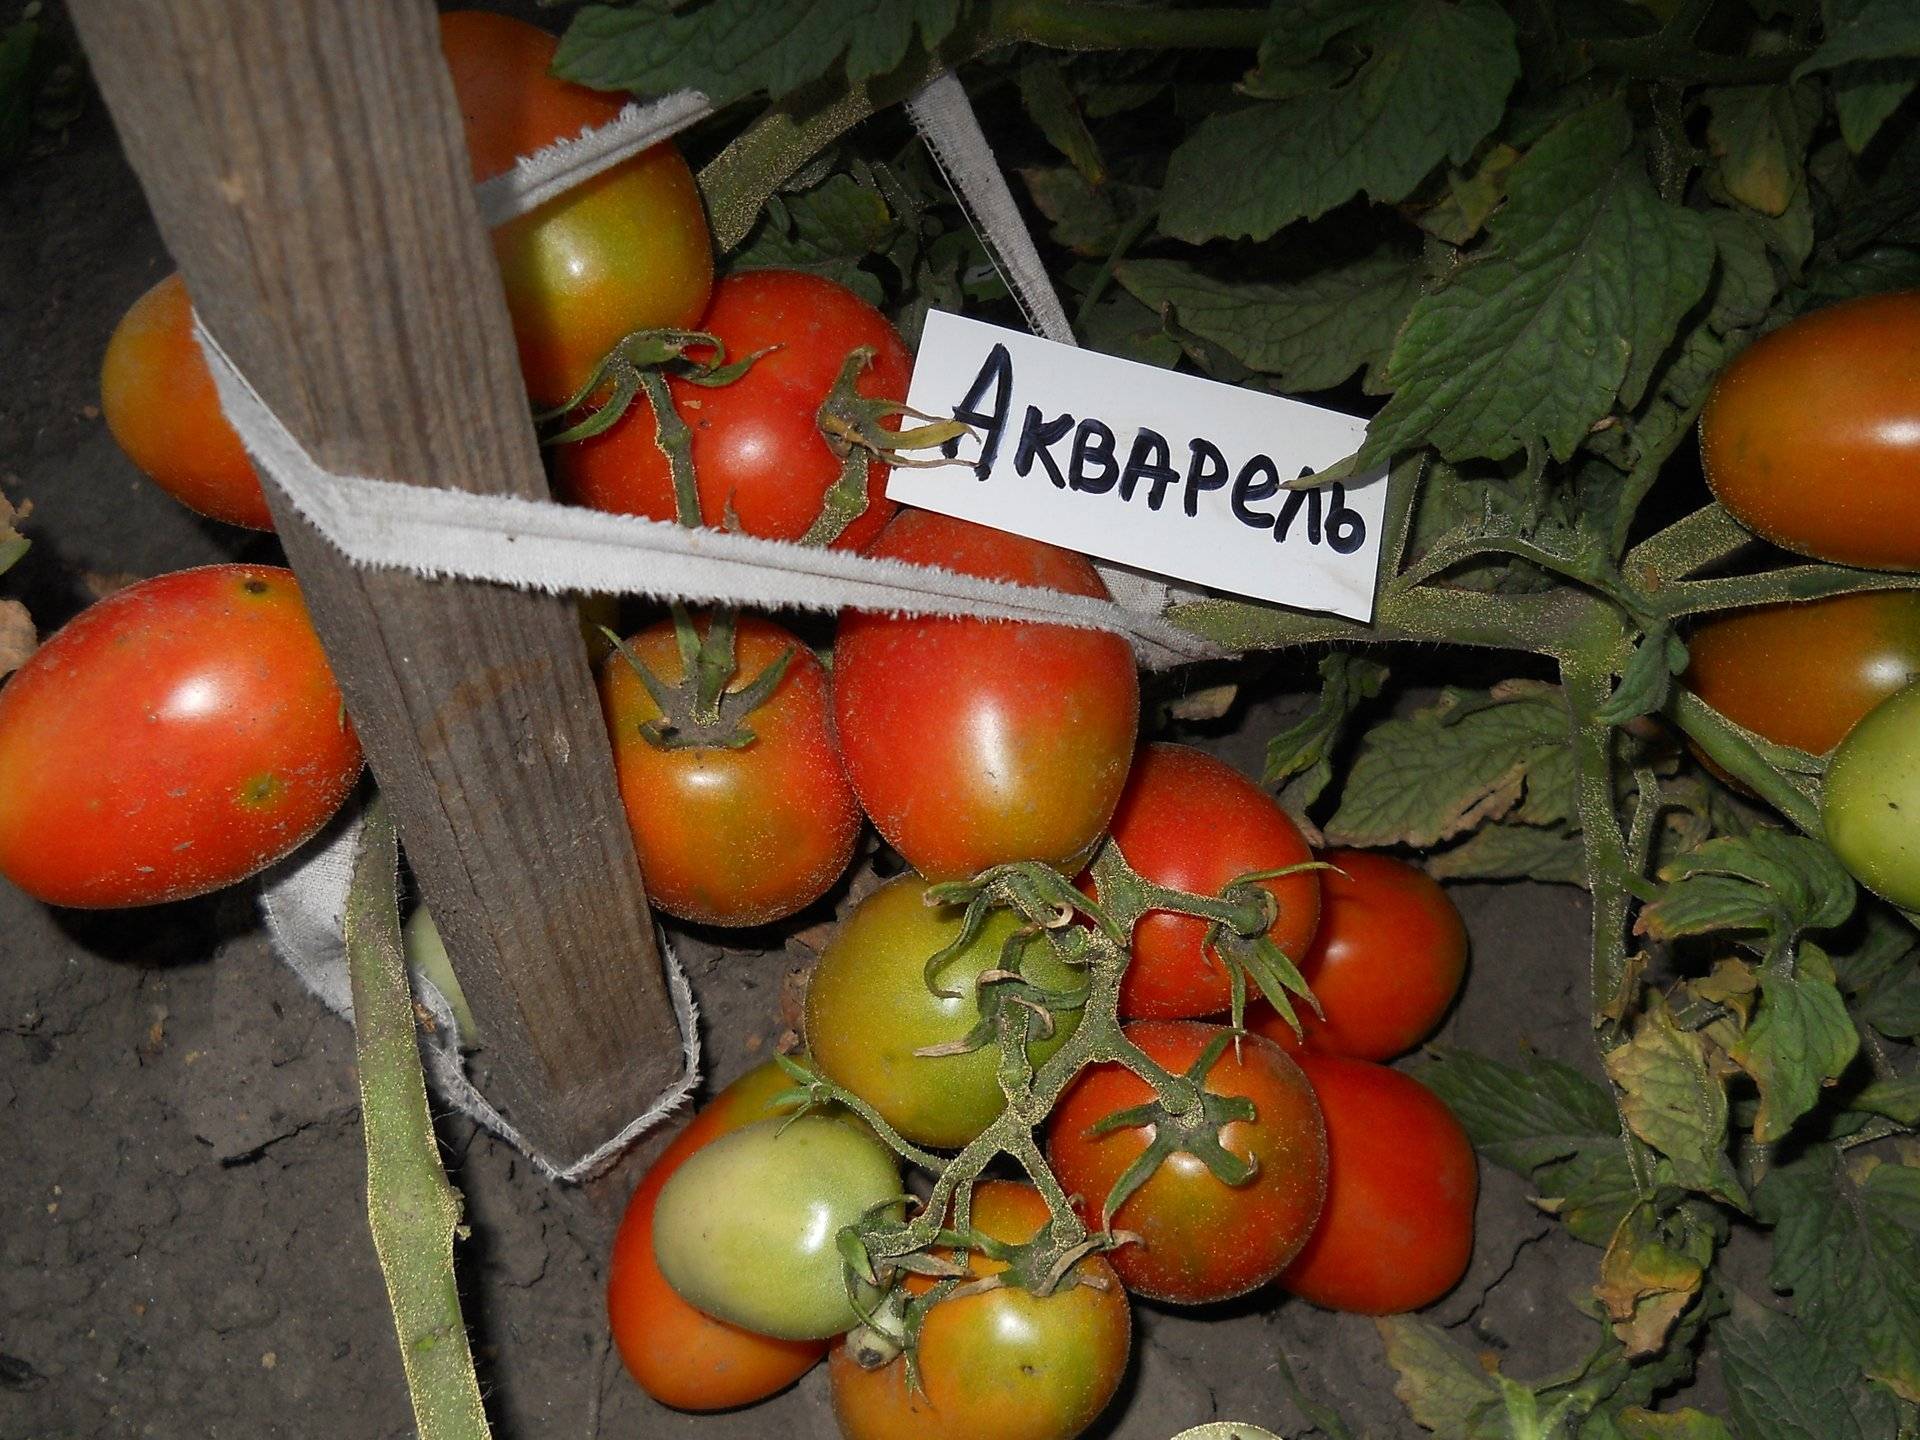 Лучшие сорта помидоров для выращивания в теплице (поликарбонатной или пленочной): обзор самых хороших томатов